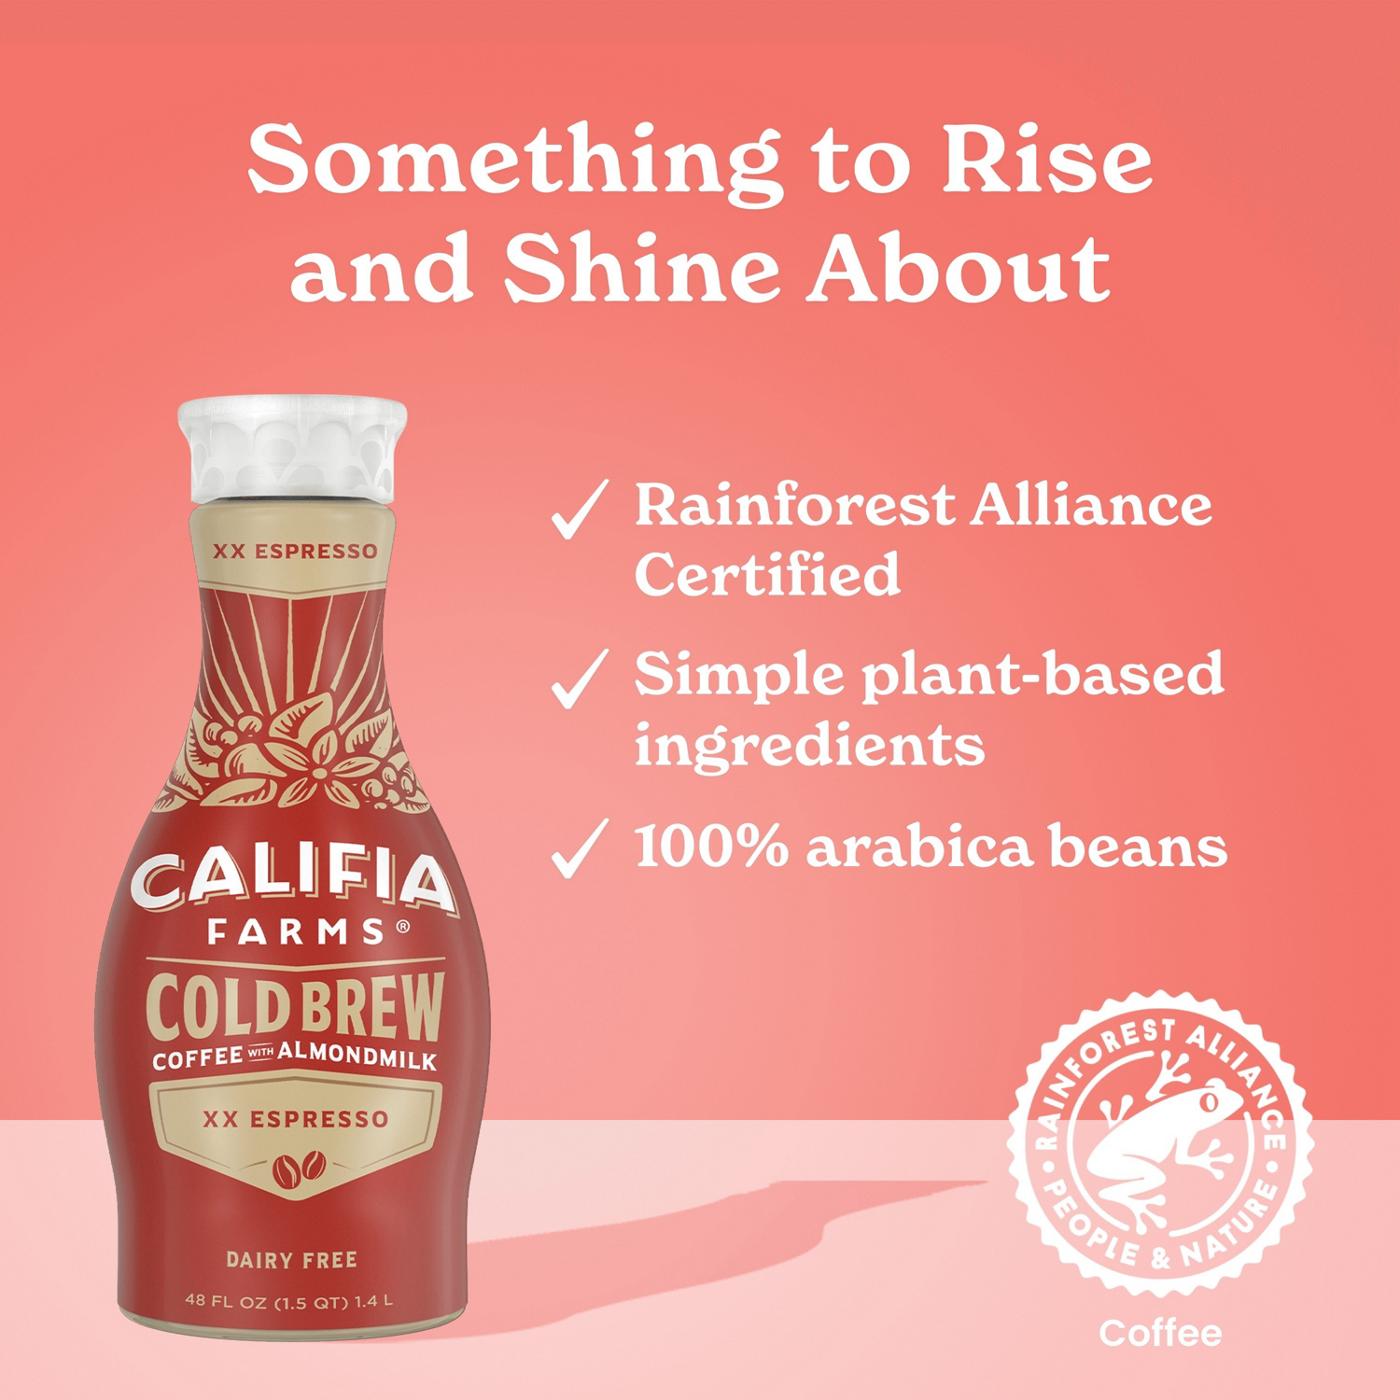 Califia Farms Cold Brew Coffee & Almond Milk Double Espresso; image 2 of 2